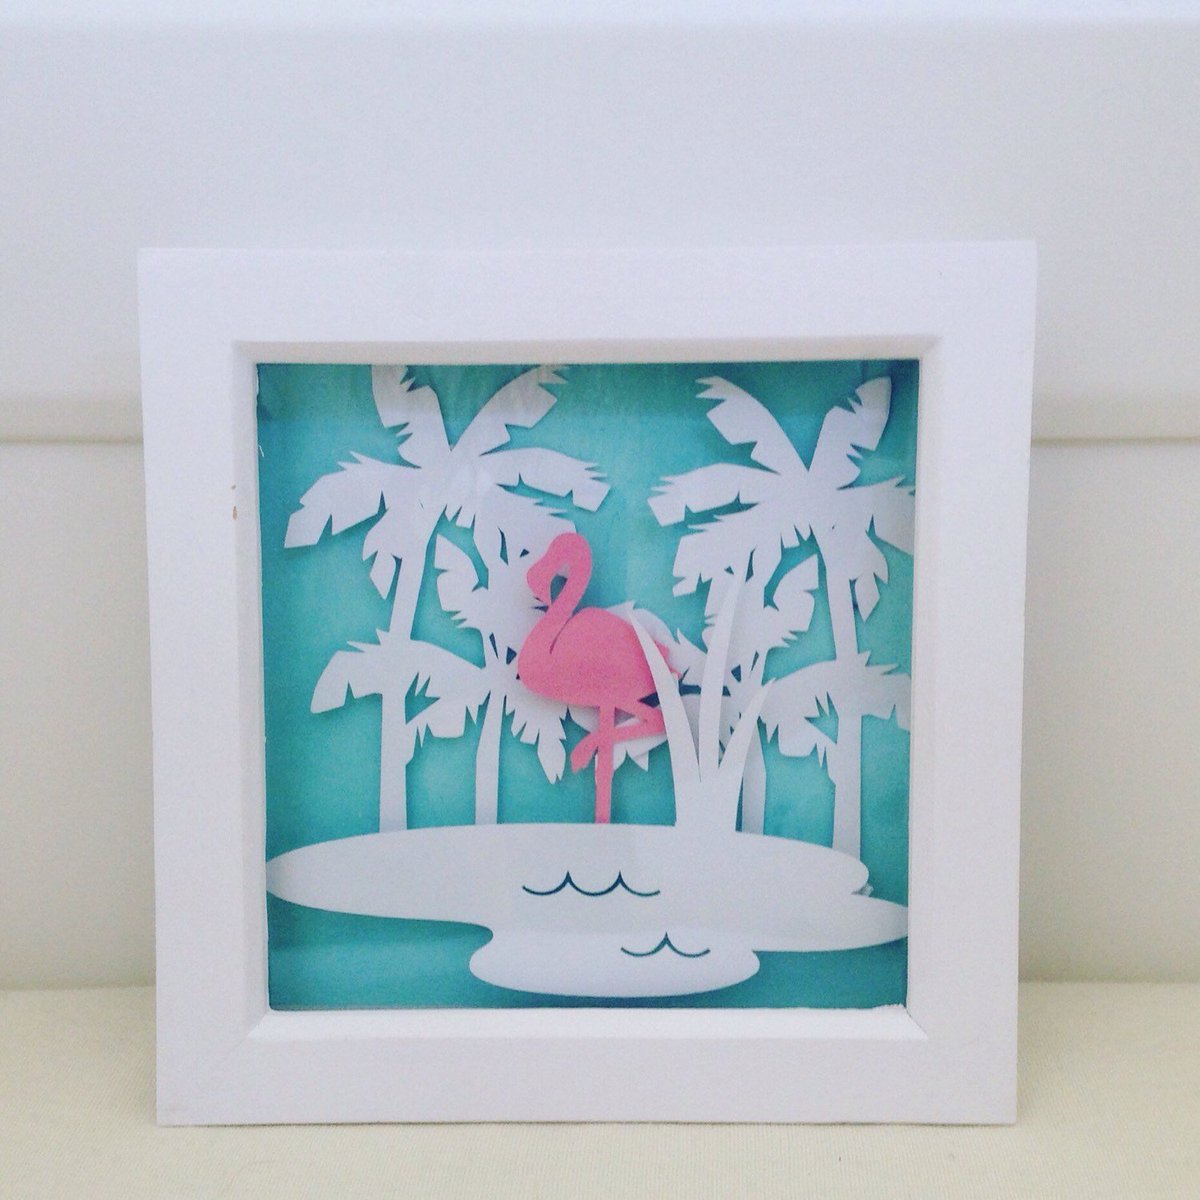 Flamingo papercut, framed papercut, flamingo wall ar… tuppu.net/7033be13 #PrettyFlamingoDesign #FlamingoWallArt